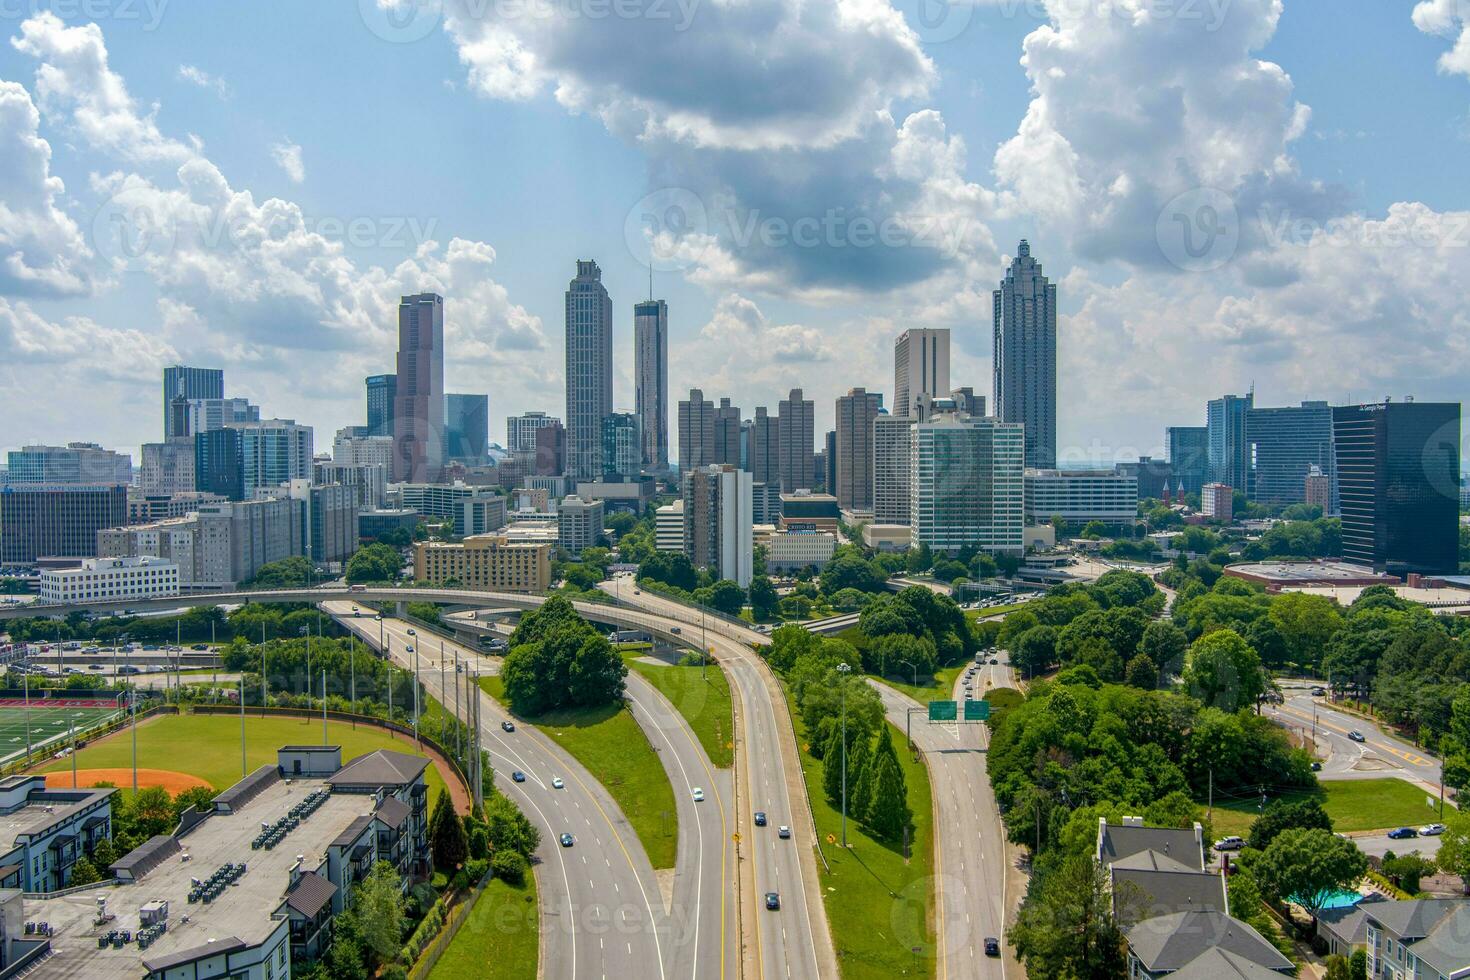 The downtown Atlanta, Georgia skyline photo